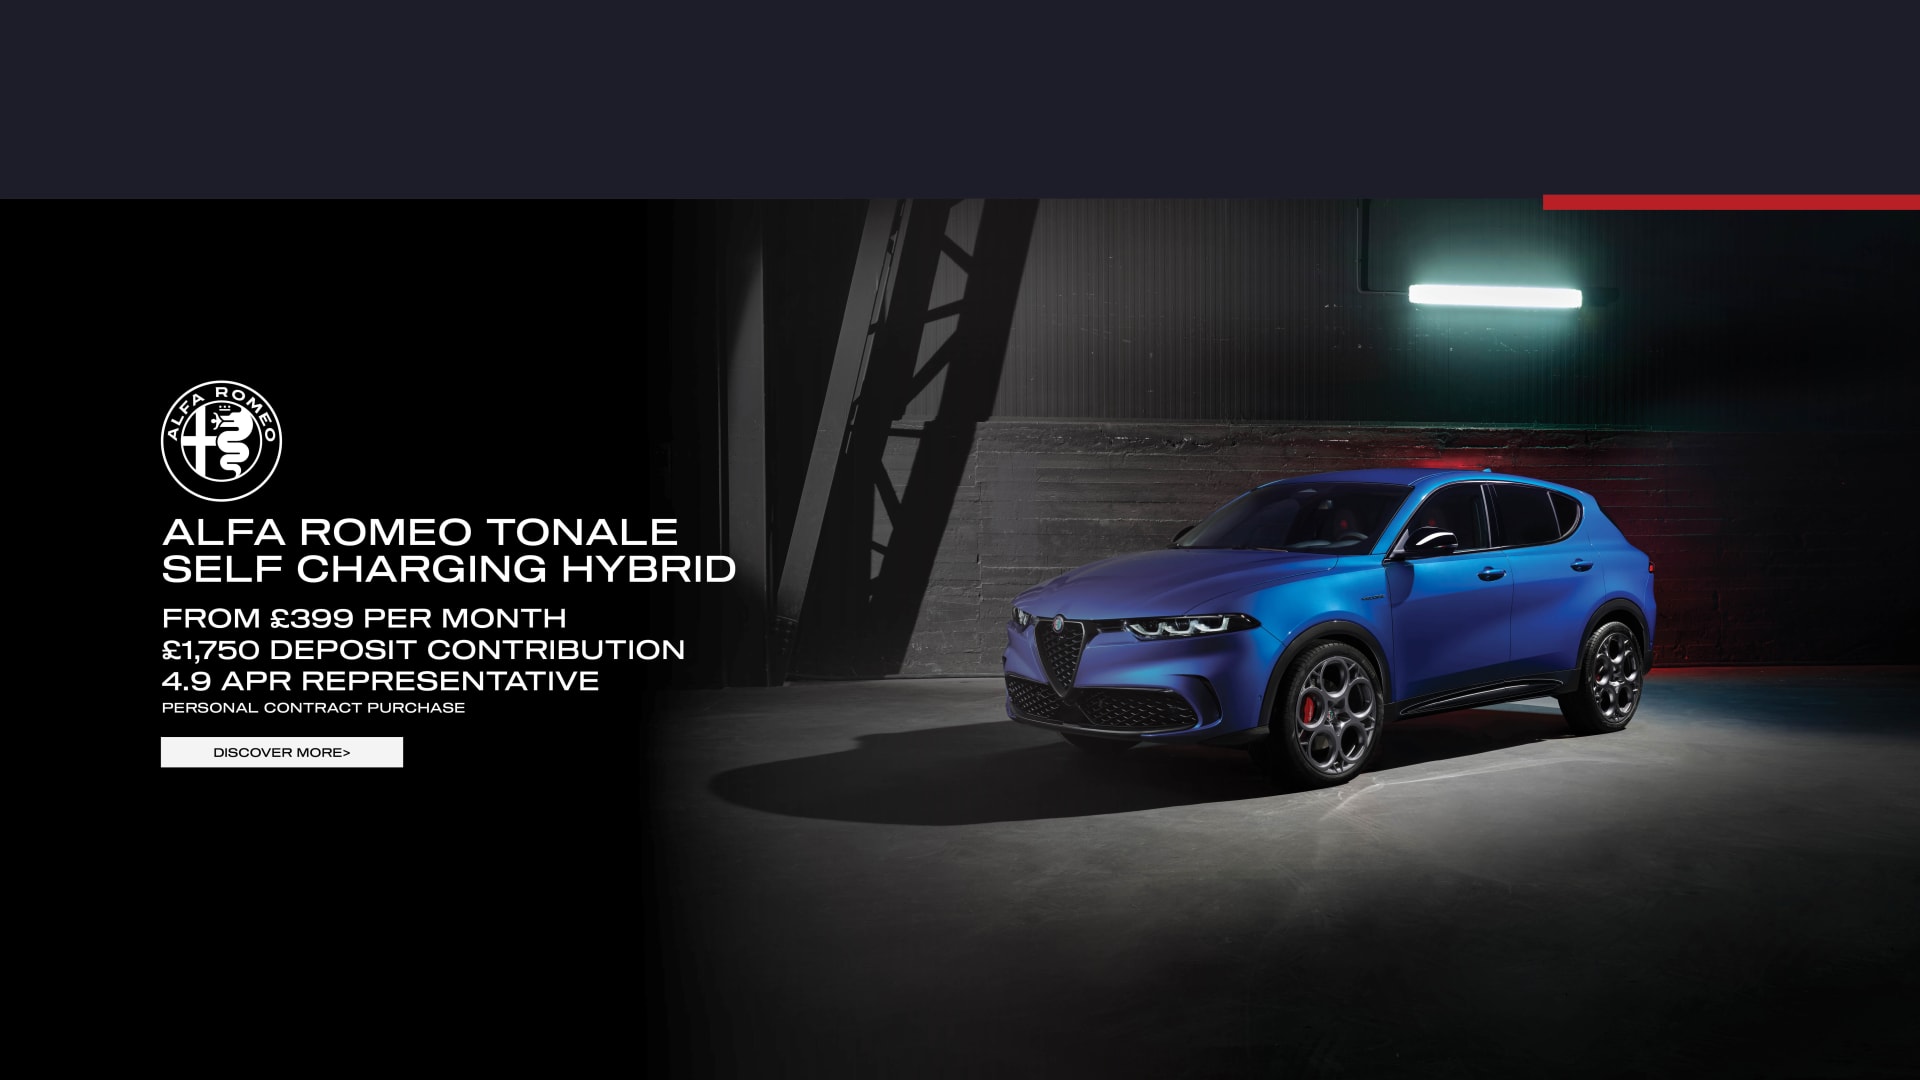 Alfa Romeo Tonale Self Charging Hybrid from £399 per month.